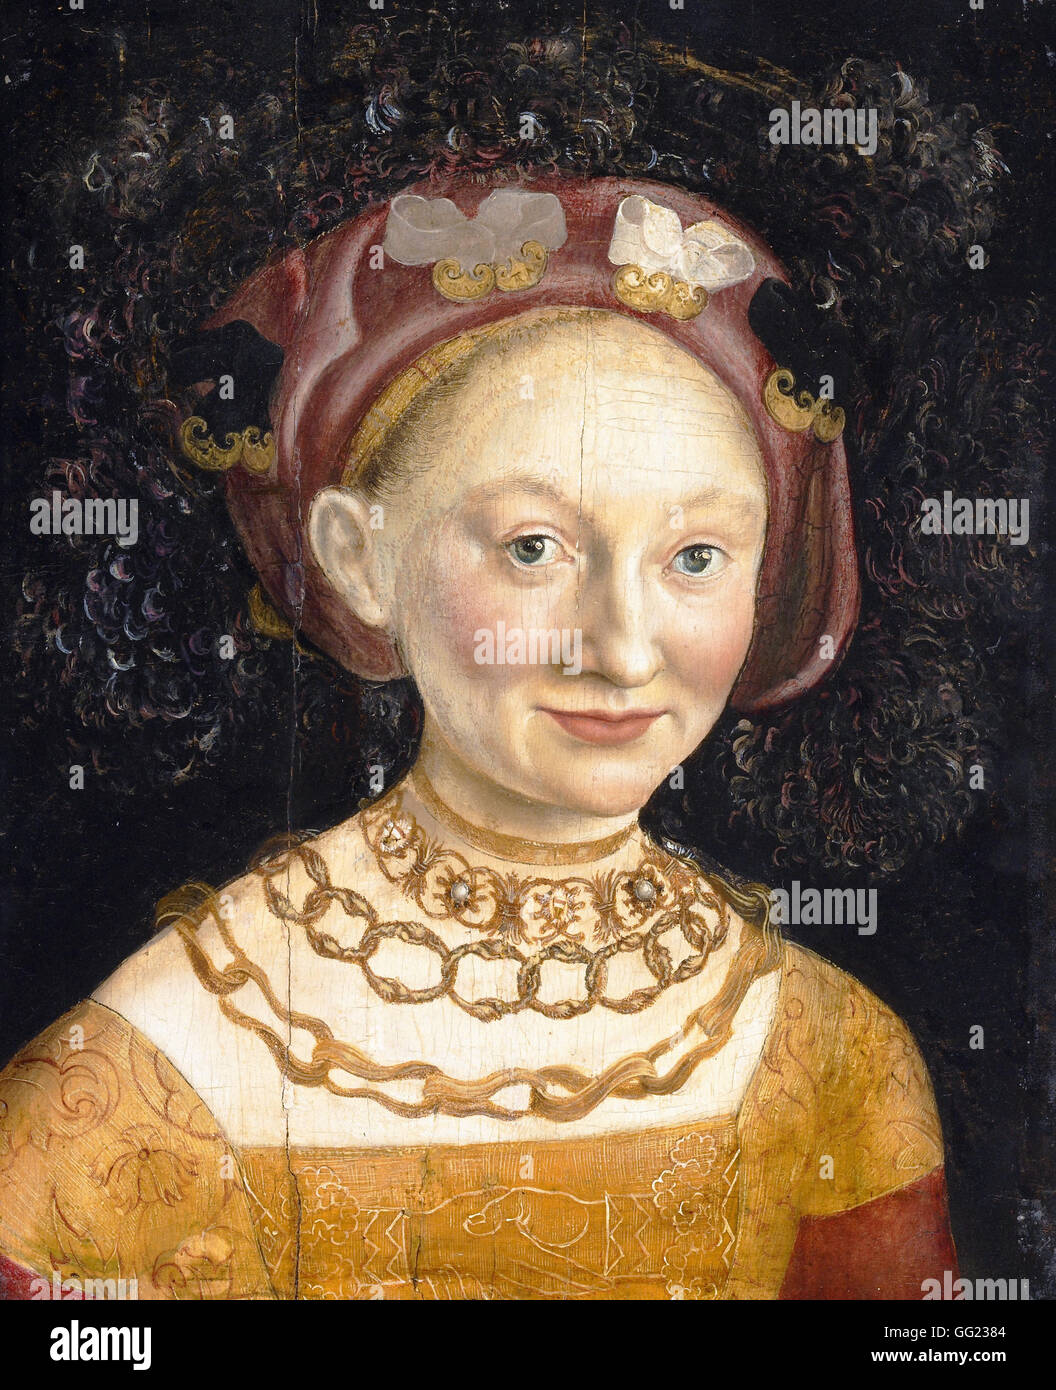 Hans Krell - ritratto della Principessa Emilia di Sassonia Foto Stock